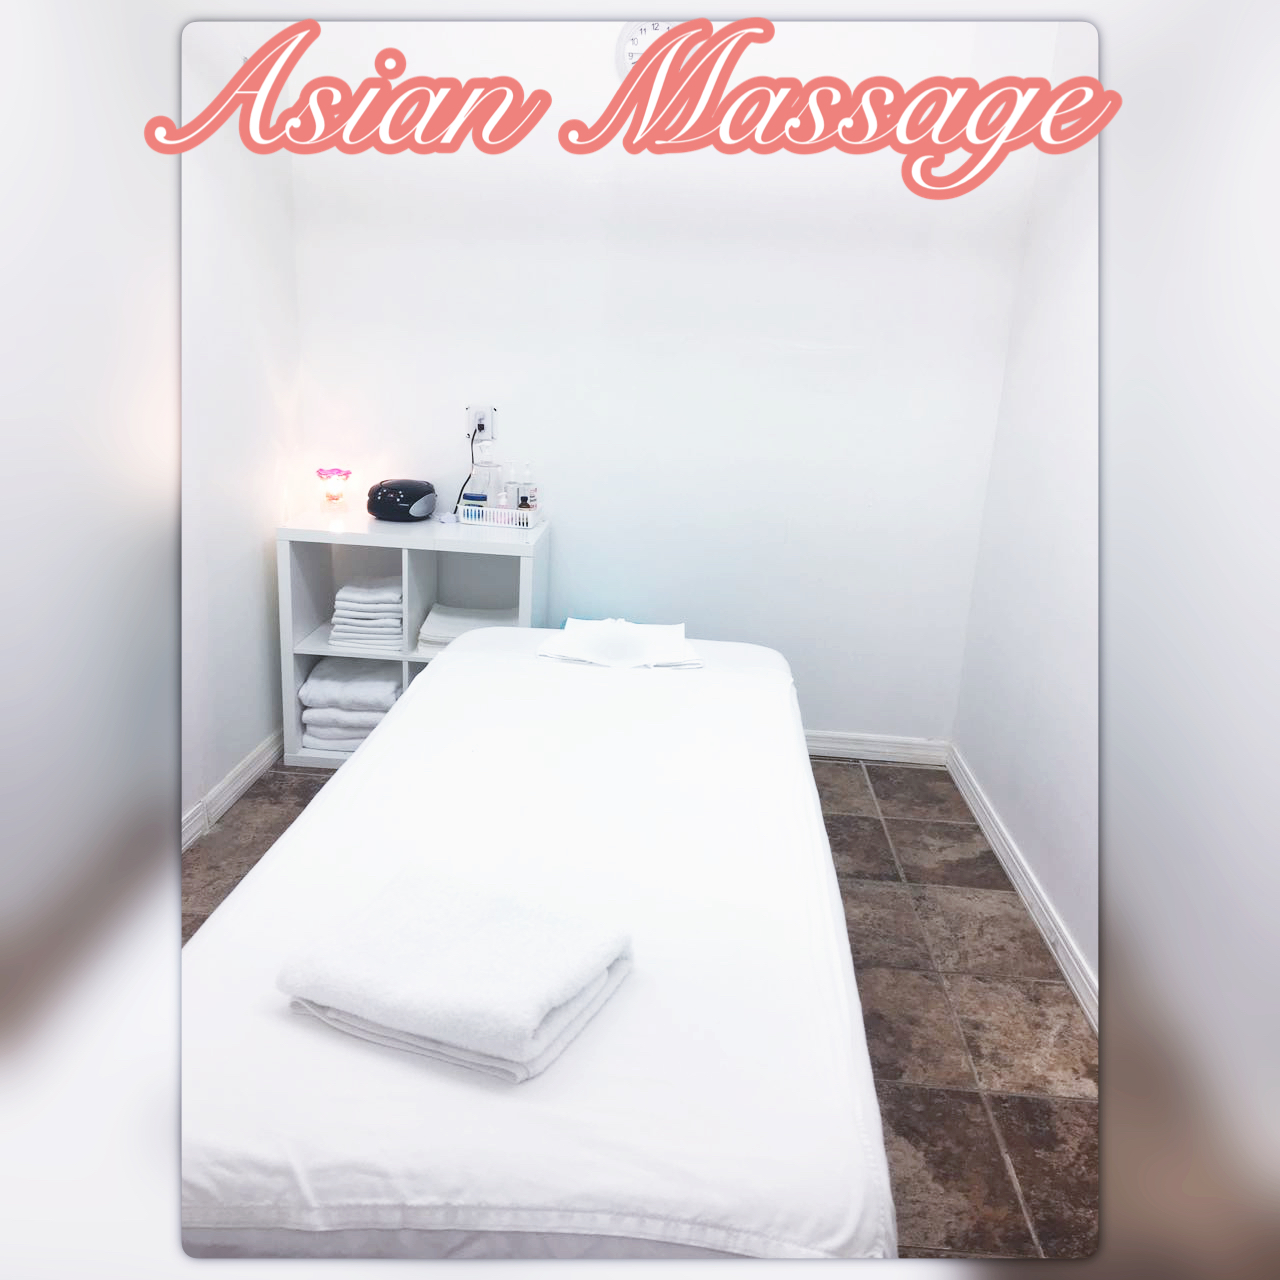 Asian Massage 31109 Ave A Suite 1, Big Pine Key Florida 33043